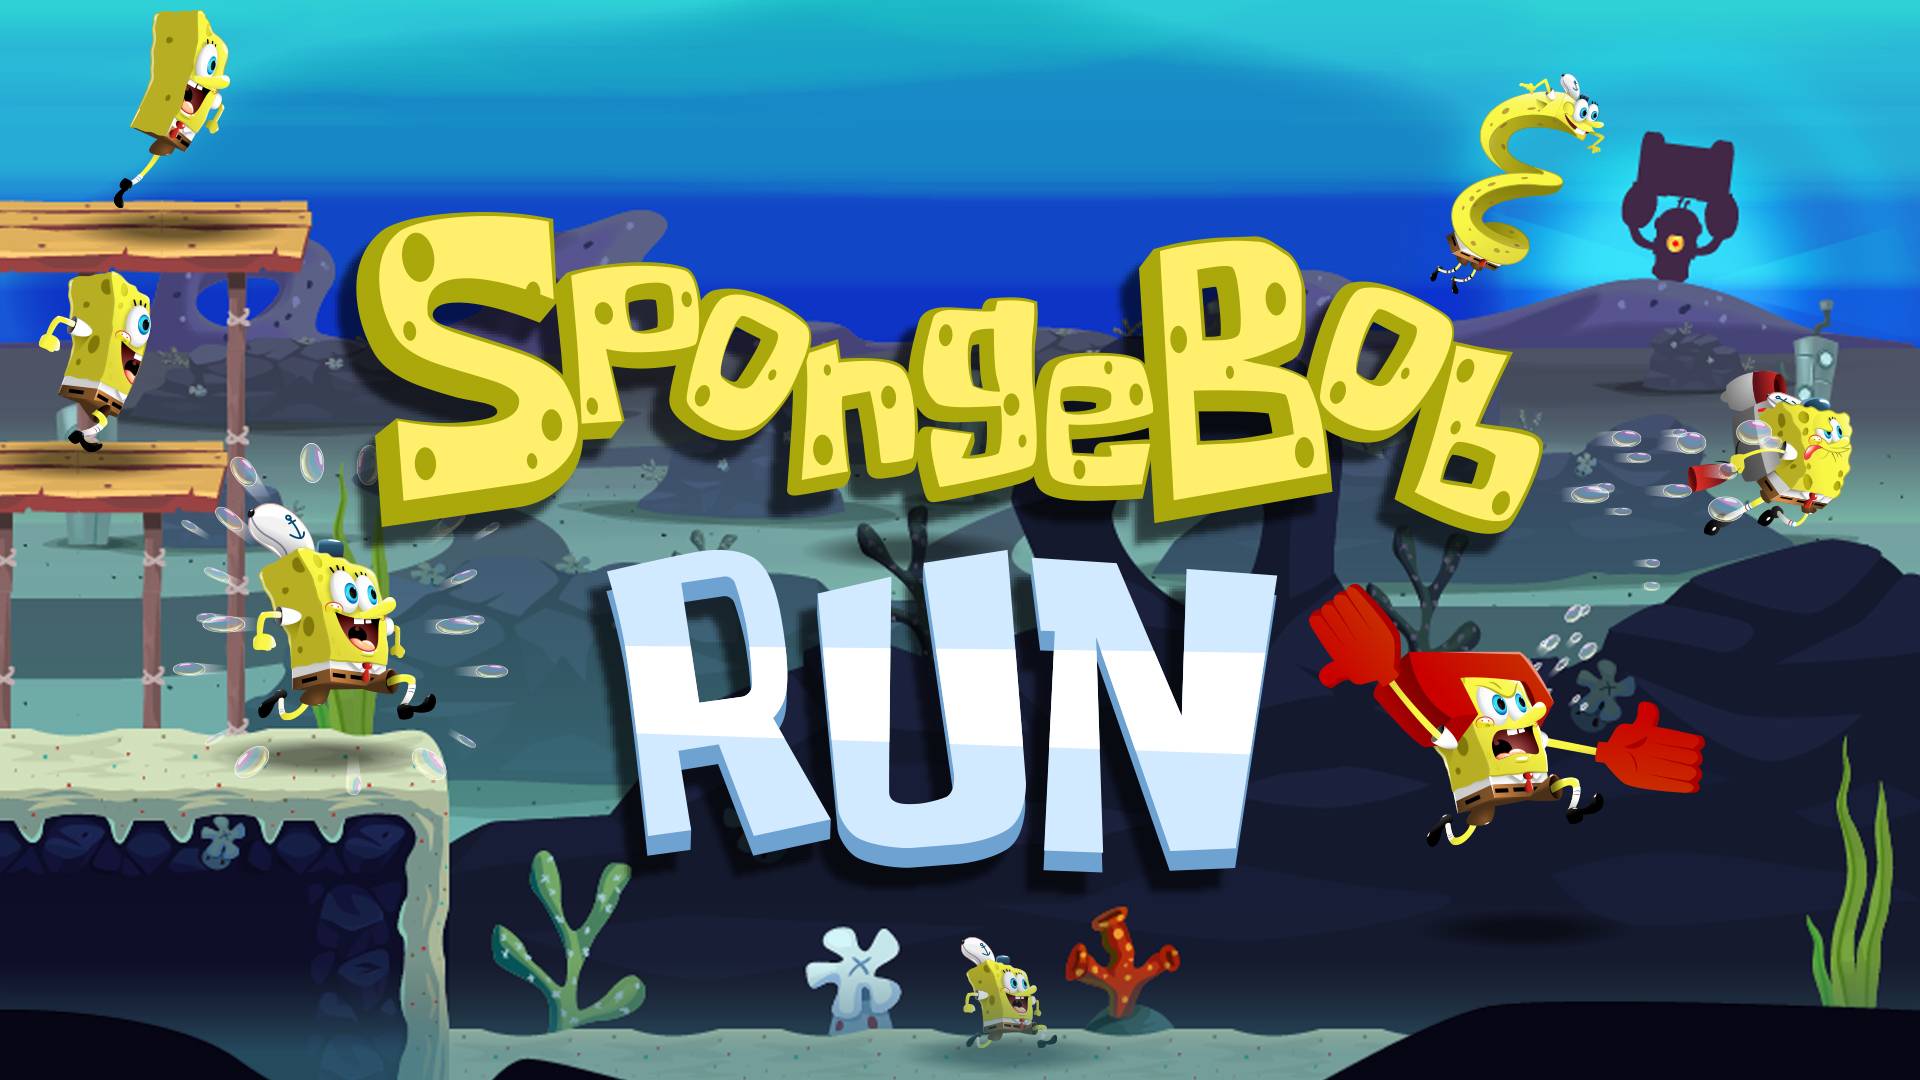 spongebob computer games